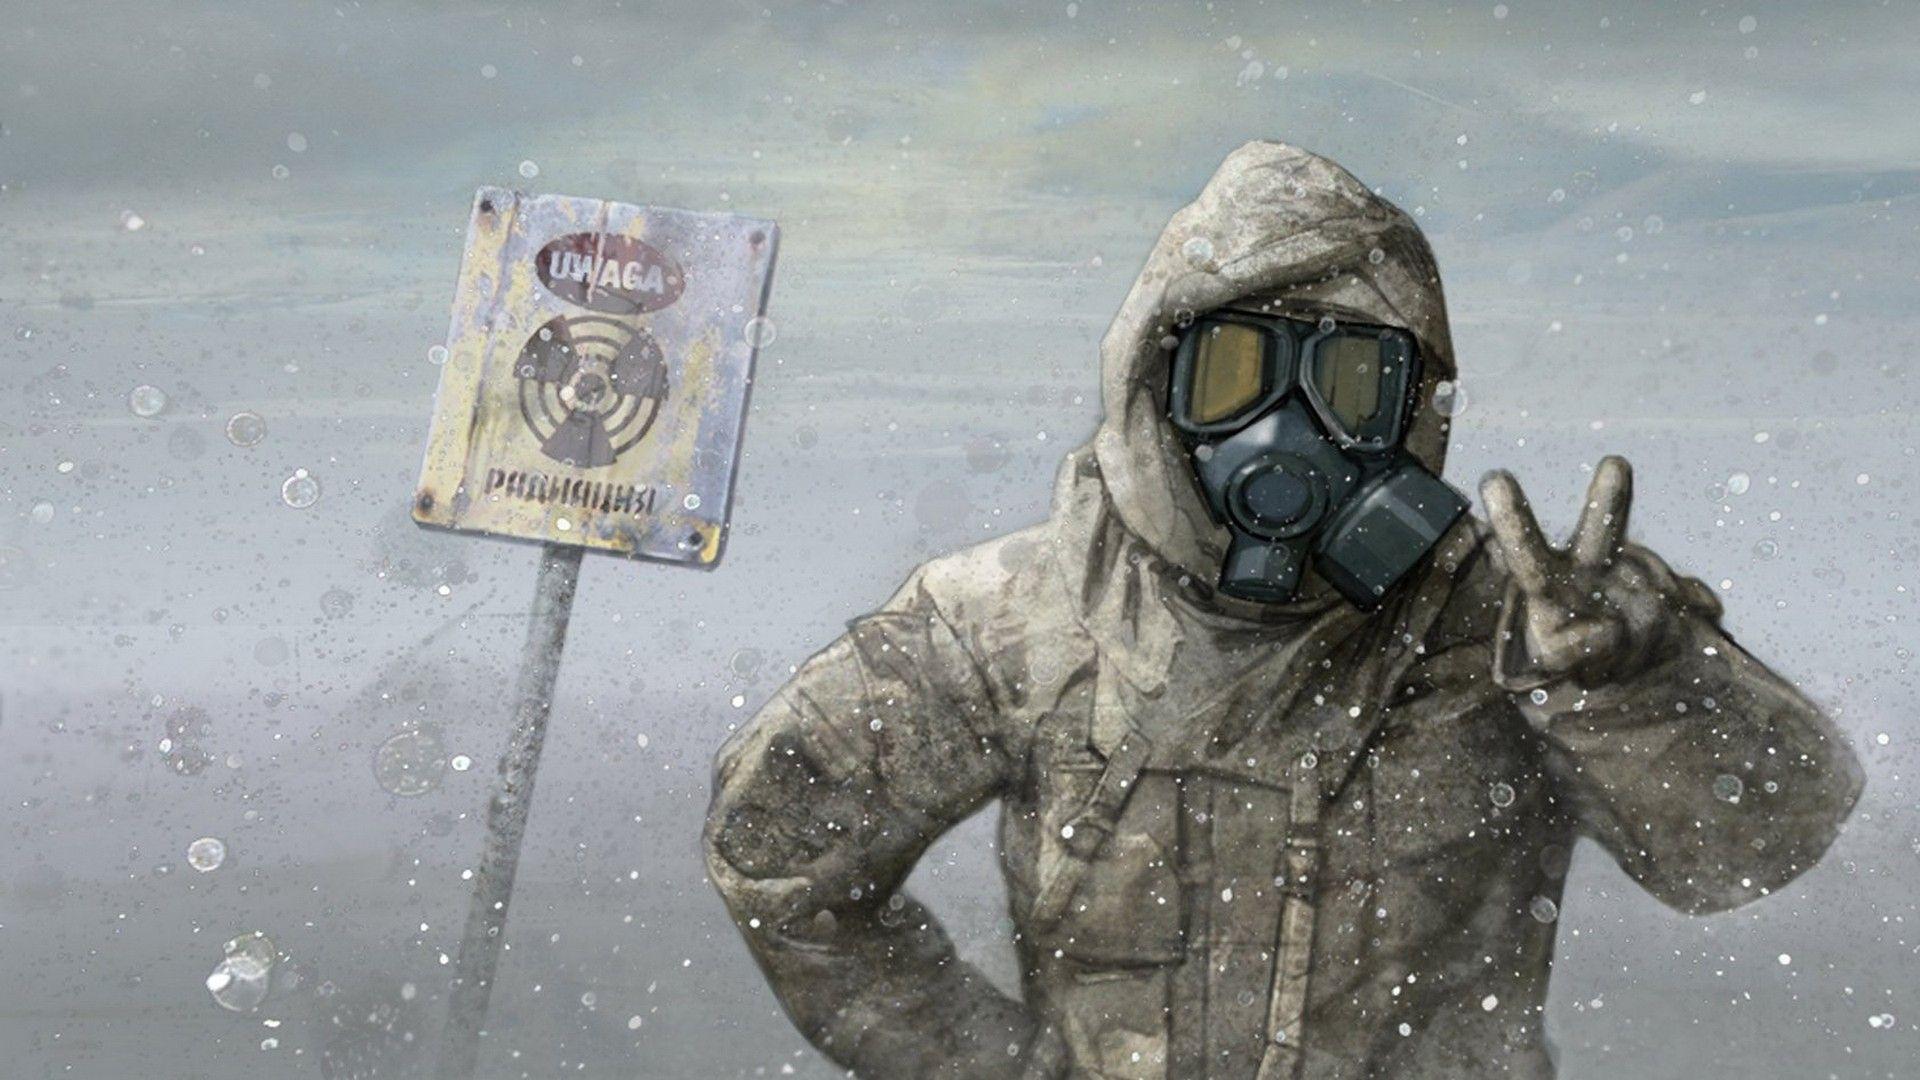 army, peace, apocalypse, gas masks, radioactive, warning, masks